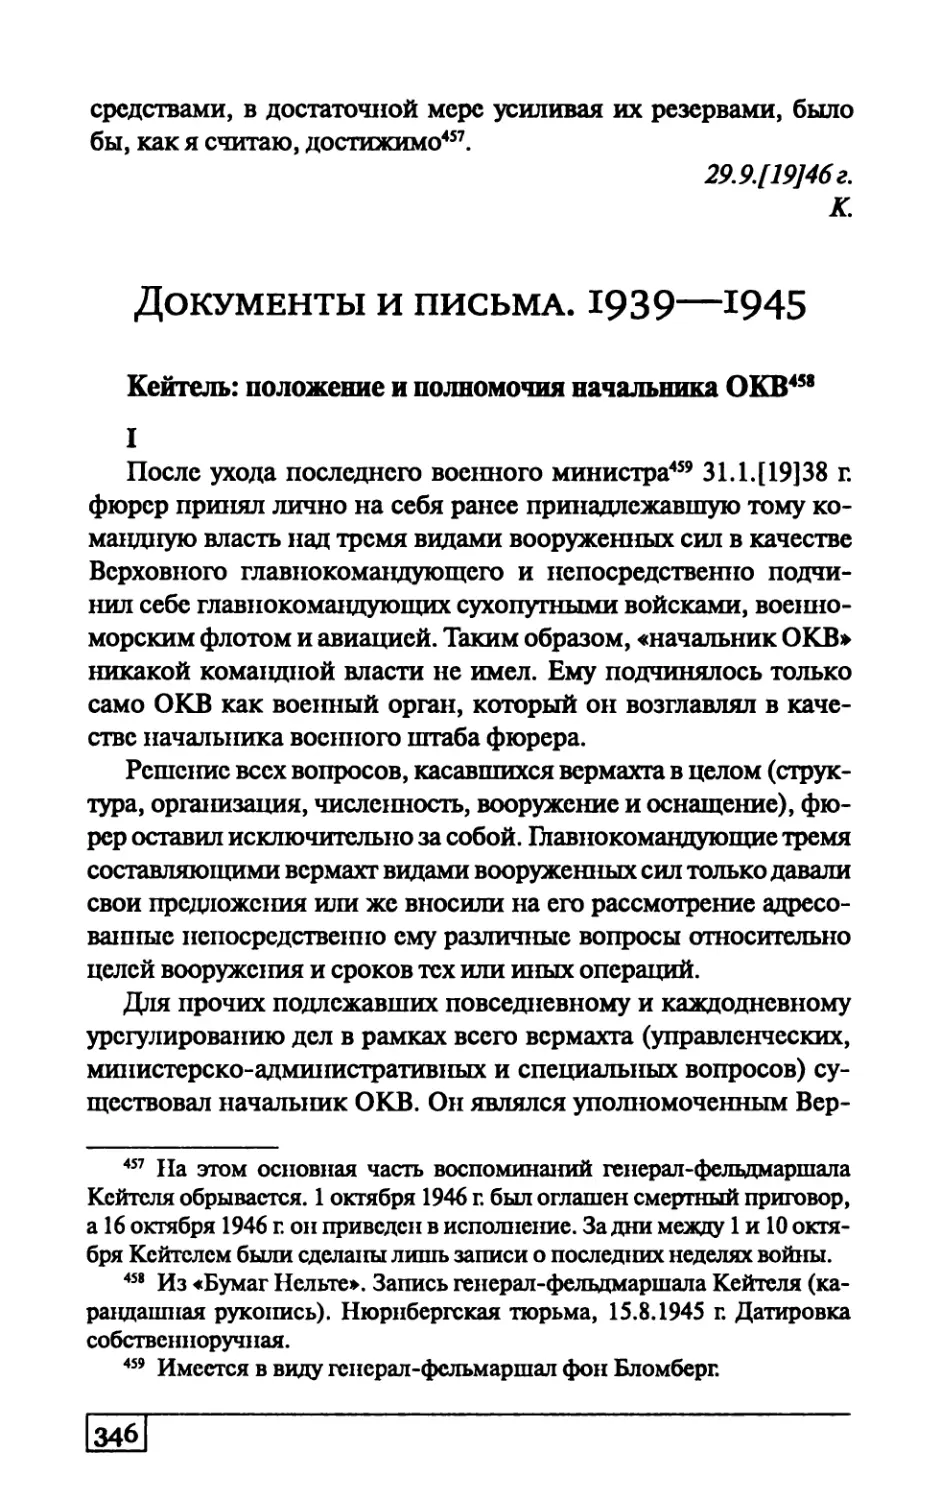 Документы и письма. 1939—1945